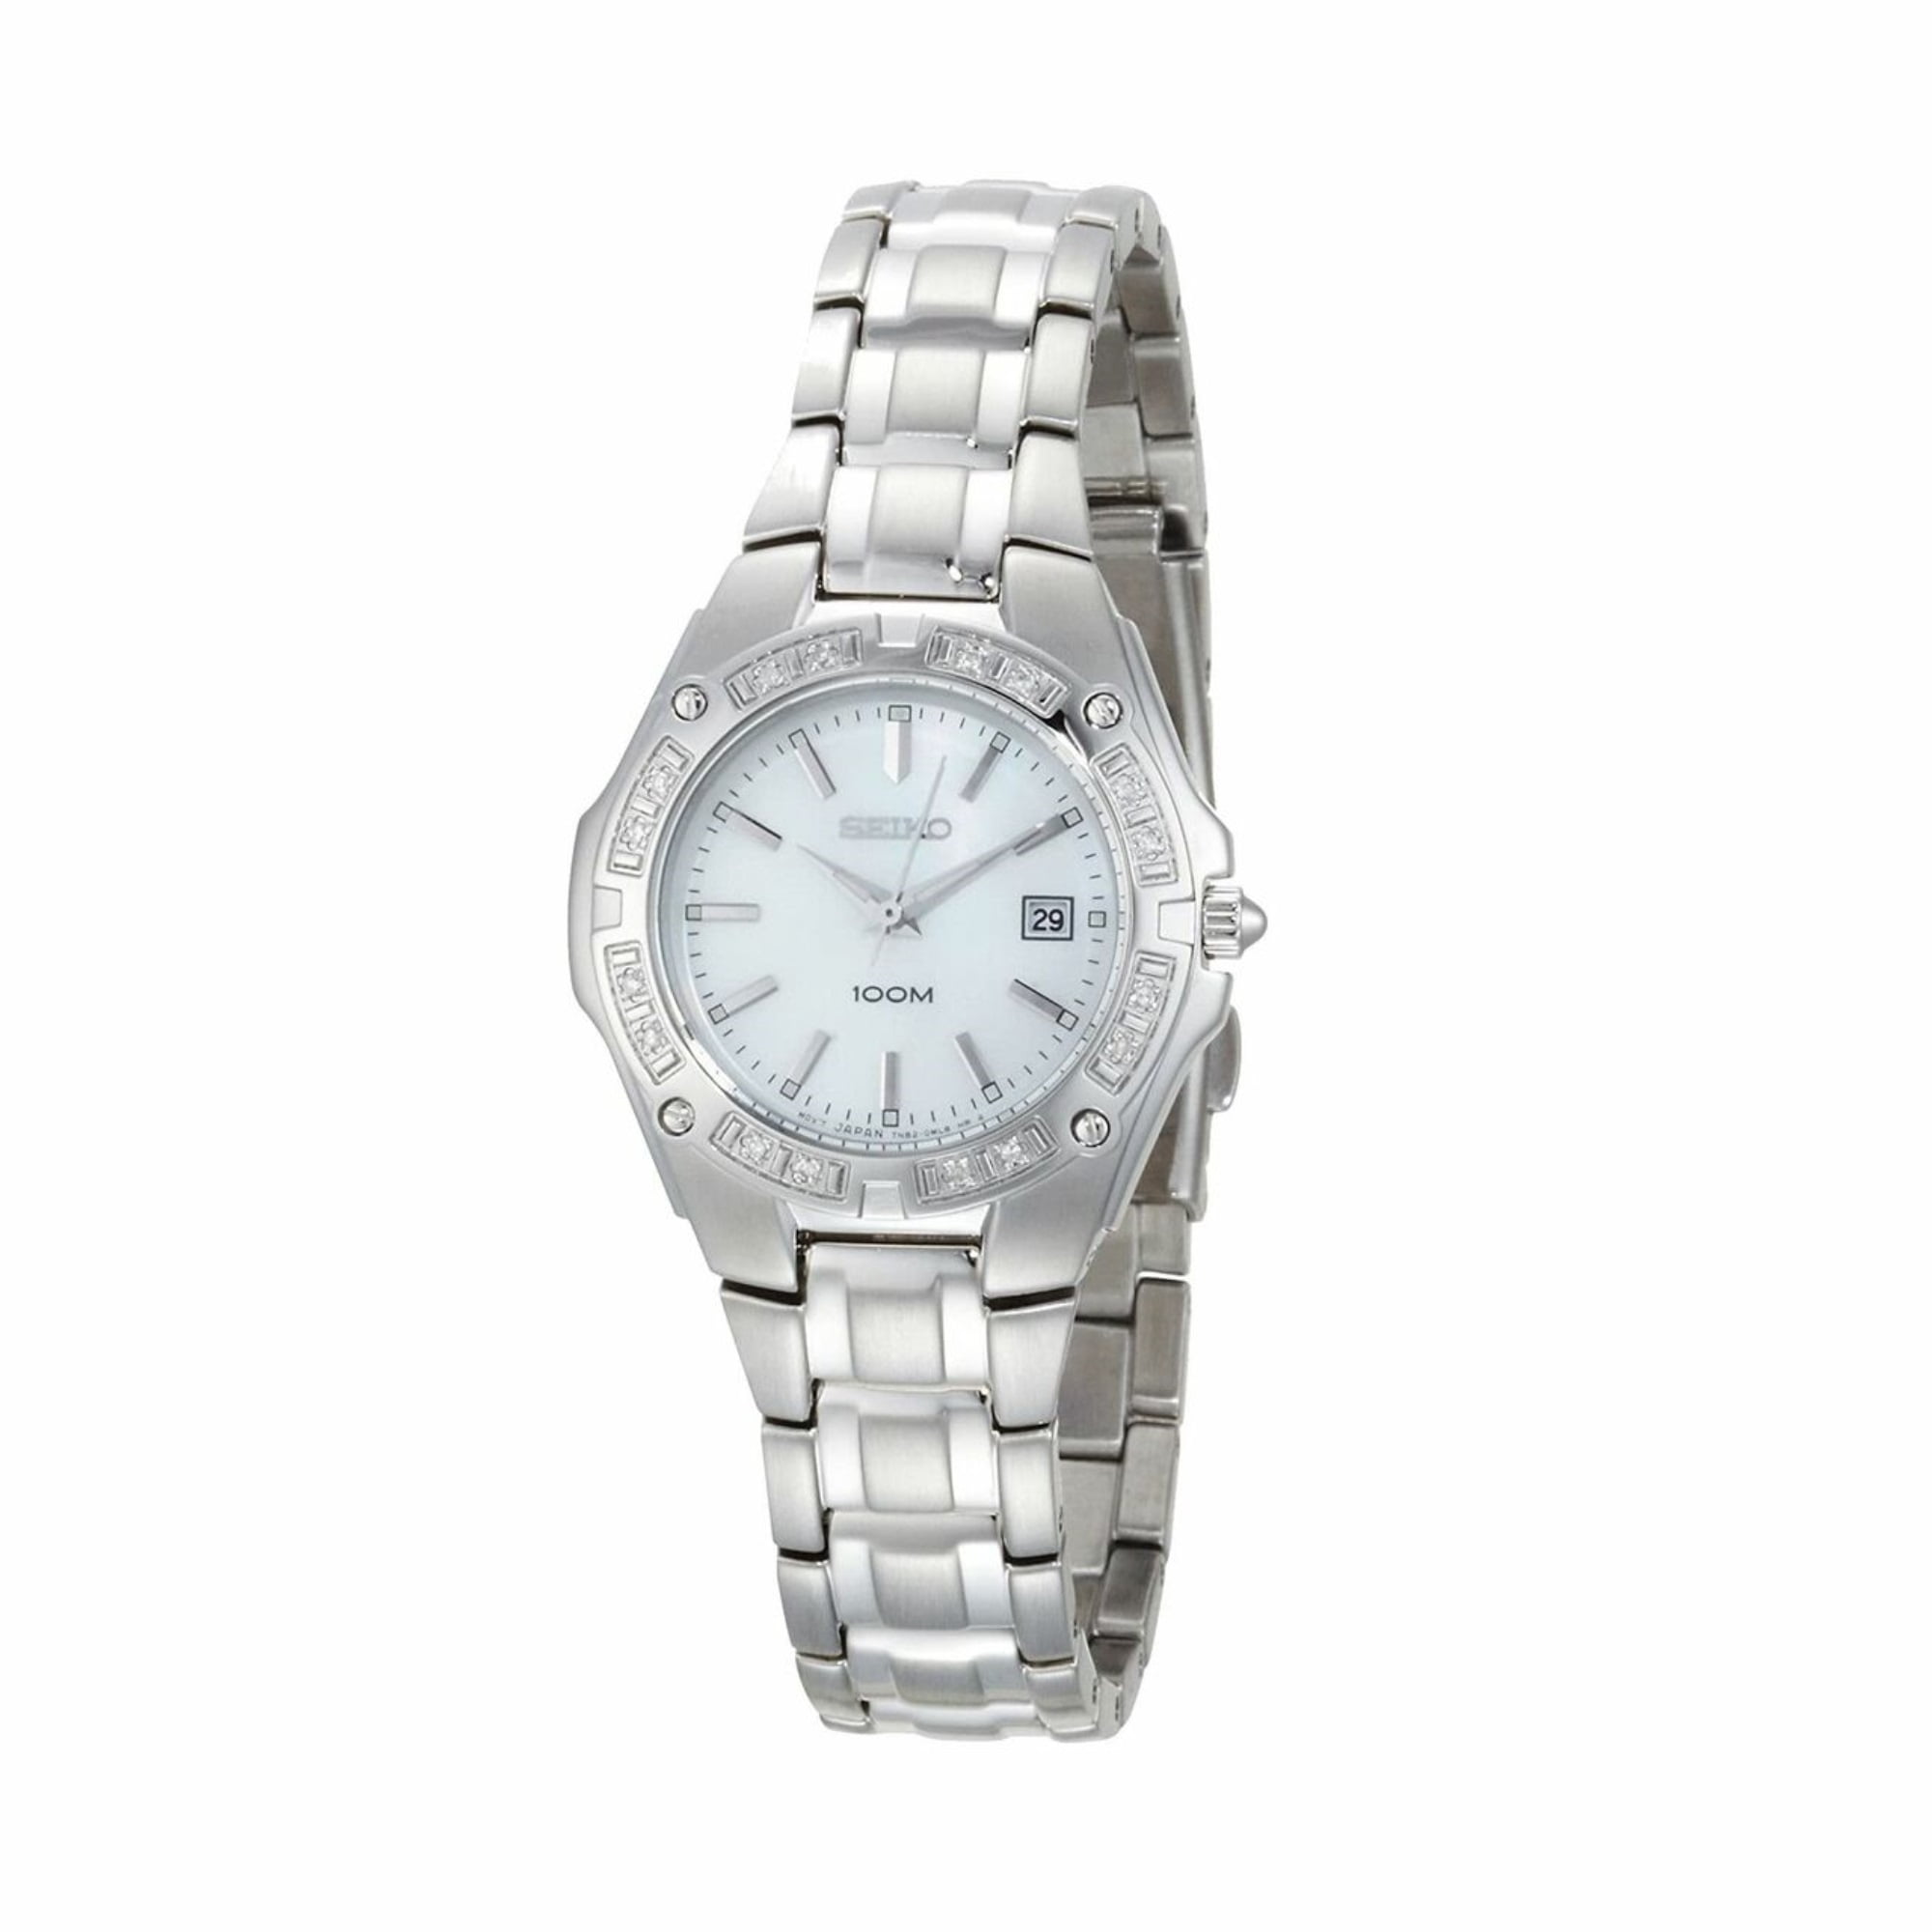 Seiko Women's SXDB51 Stainless Steel White Dial Diamond Watch 